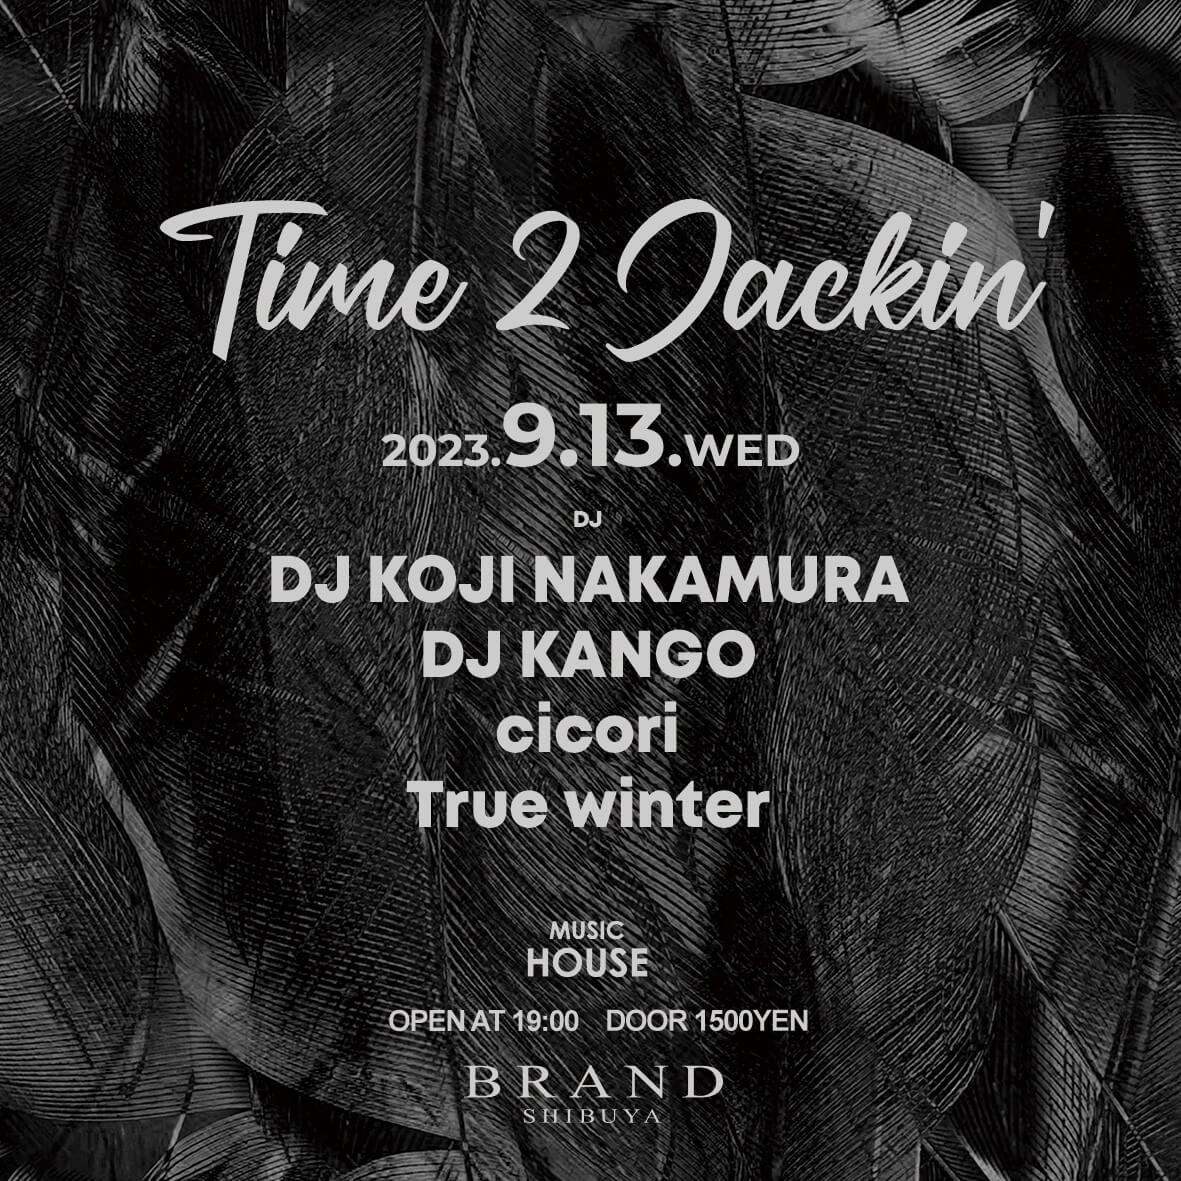 Time 2 Jackin' 2023年09月13日（水曜日）に渋谷 クラブのBRAND SHIBUYAで開催されるHOUSEイベント